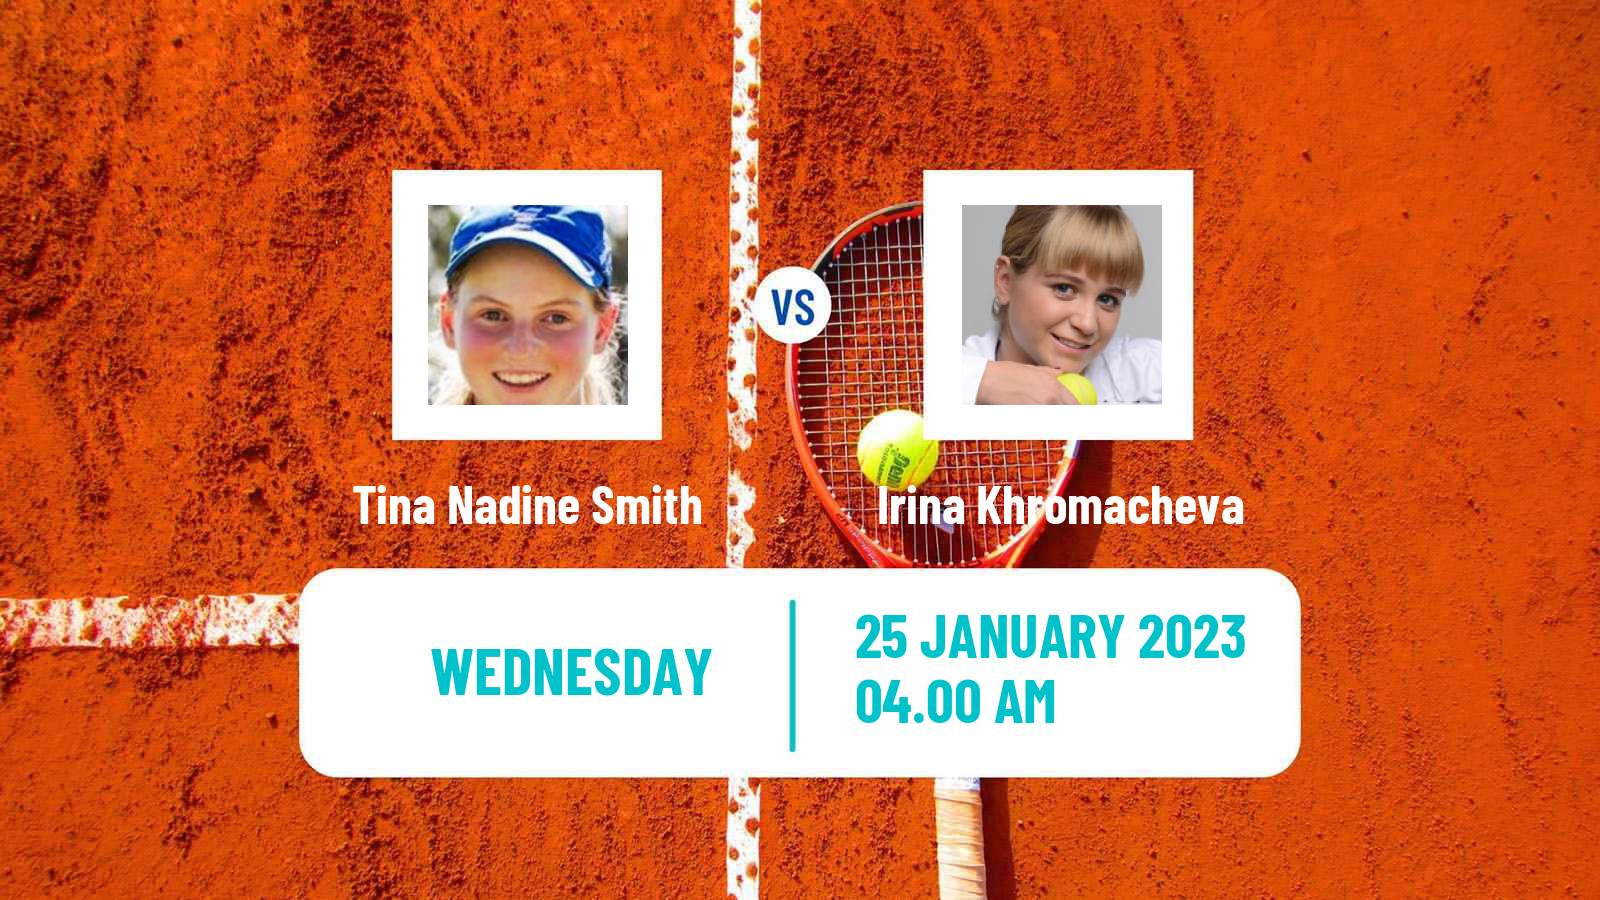 Tennis ITF Tournaments Tina Nadine Smith - Irina Khromacheva